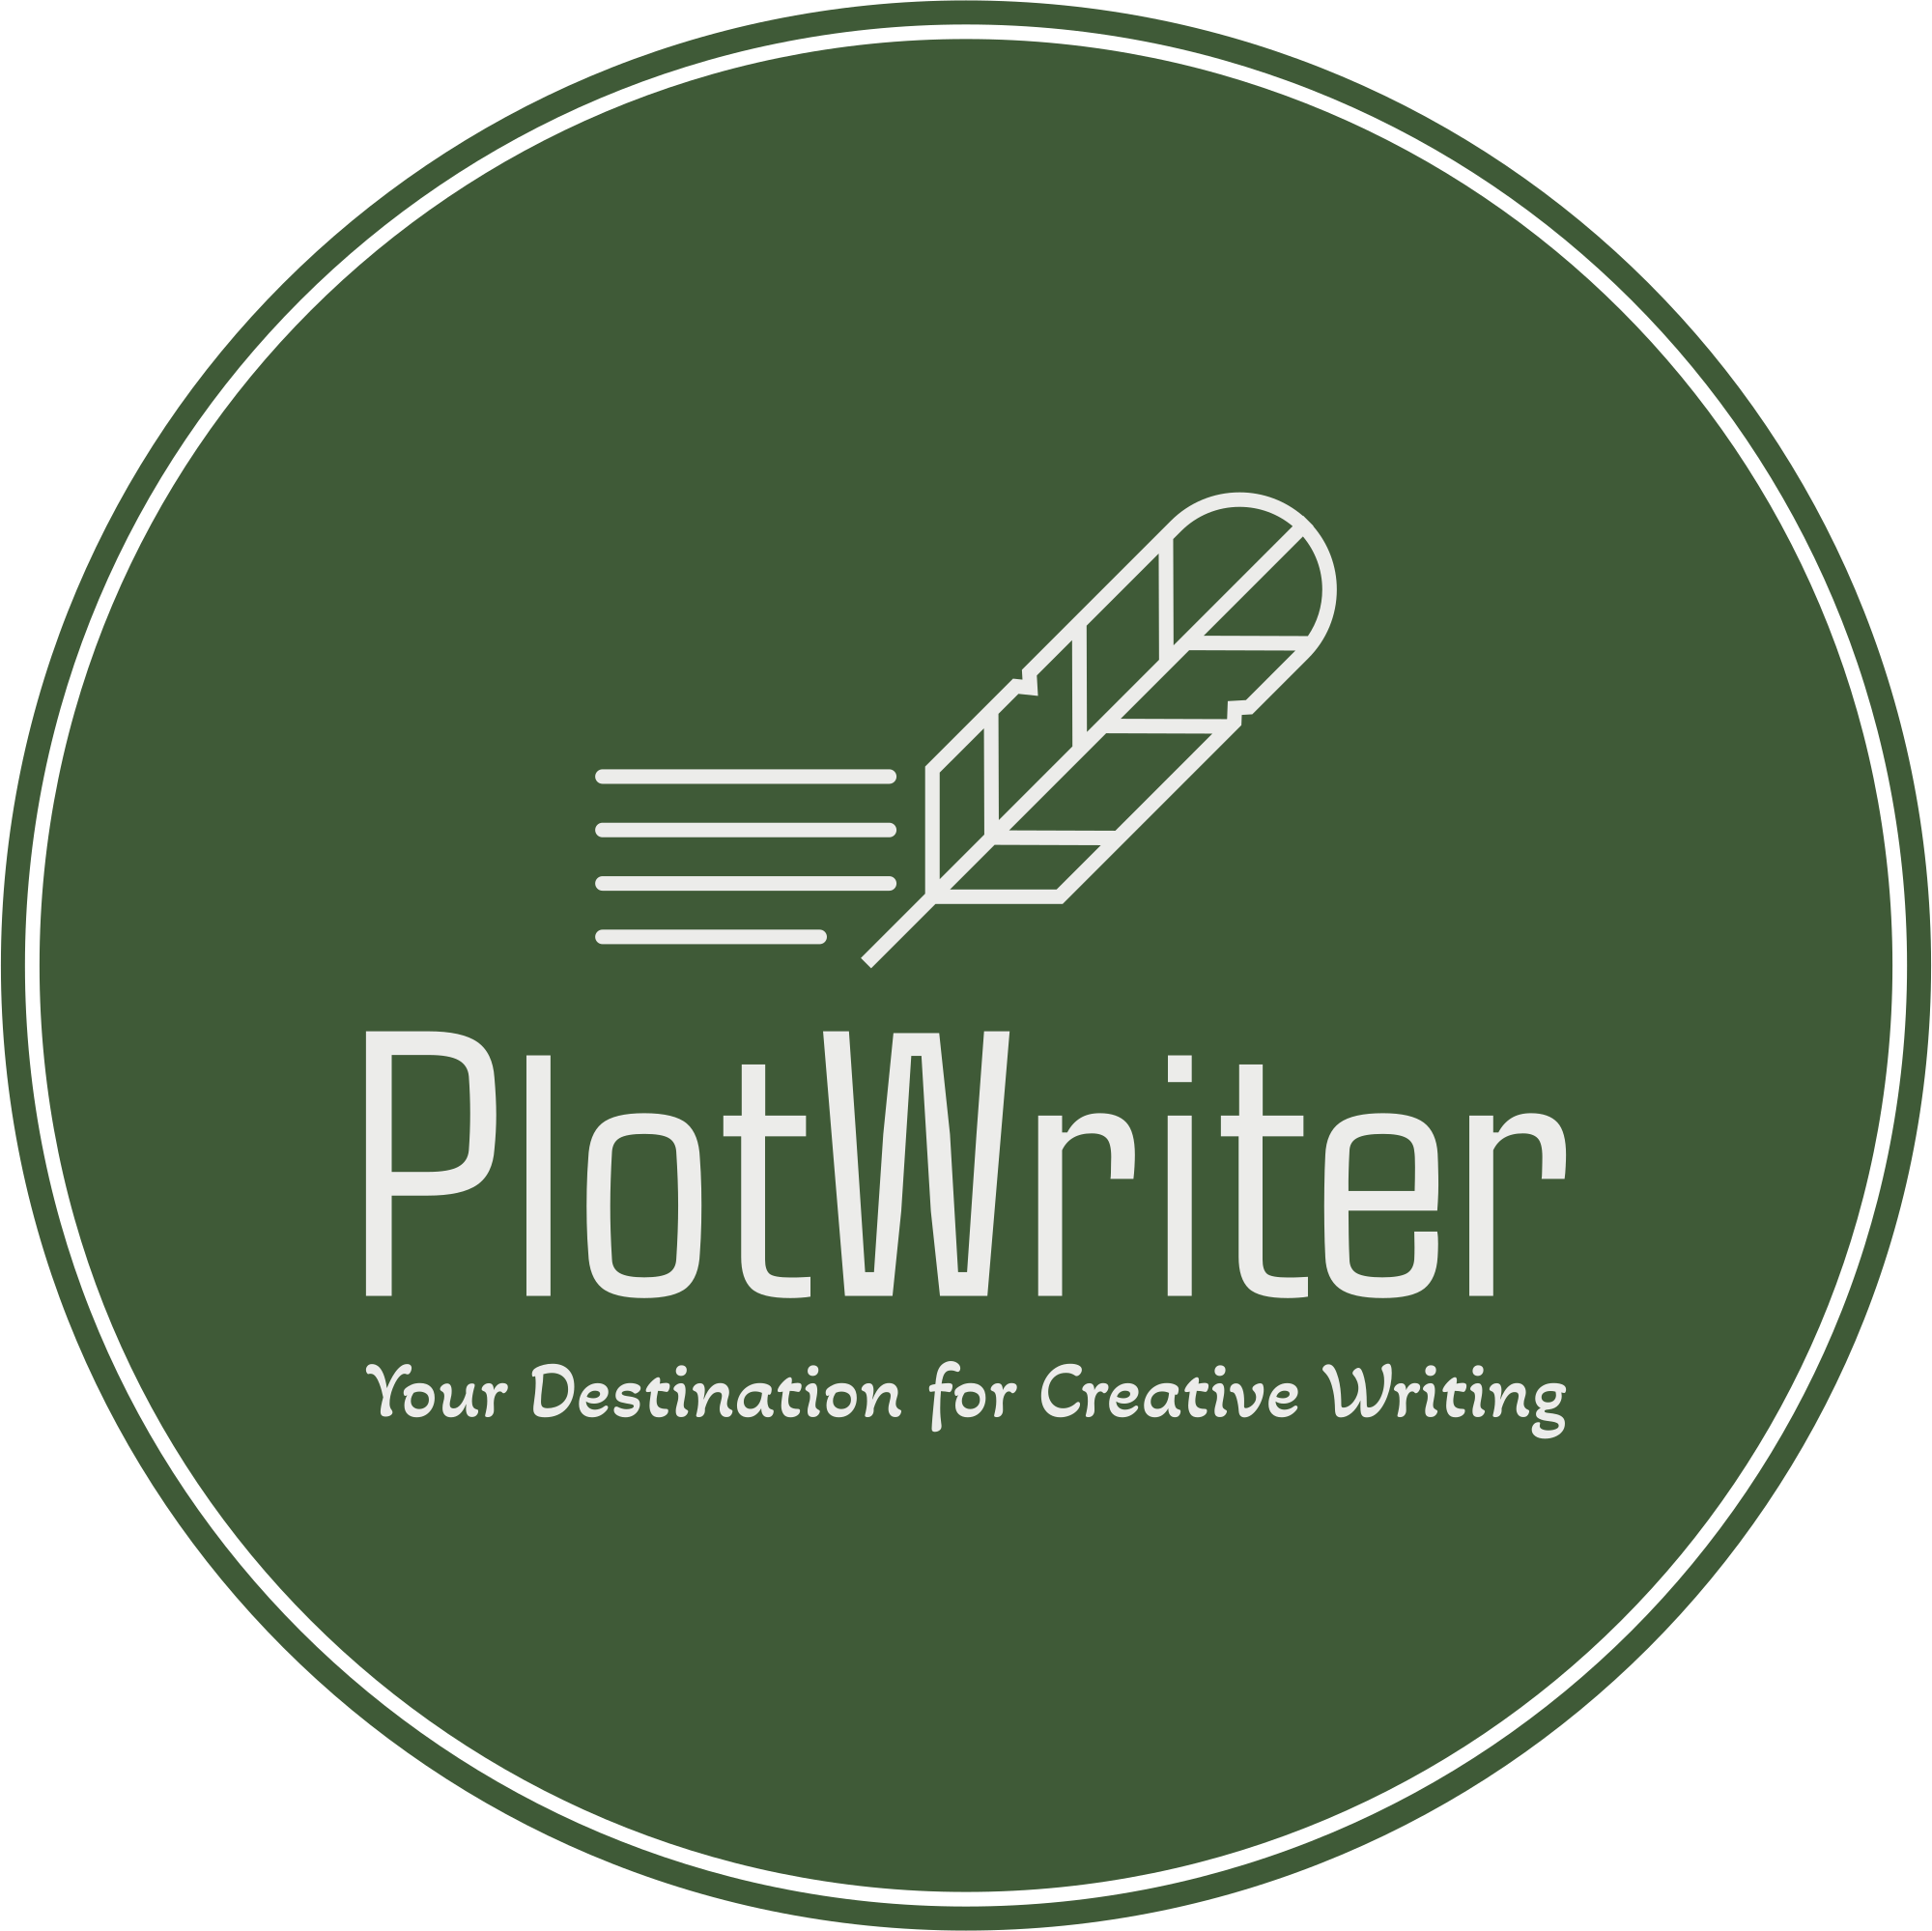 Plotwriter